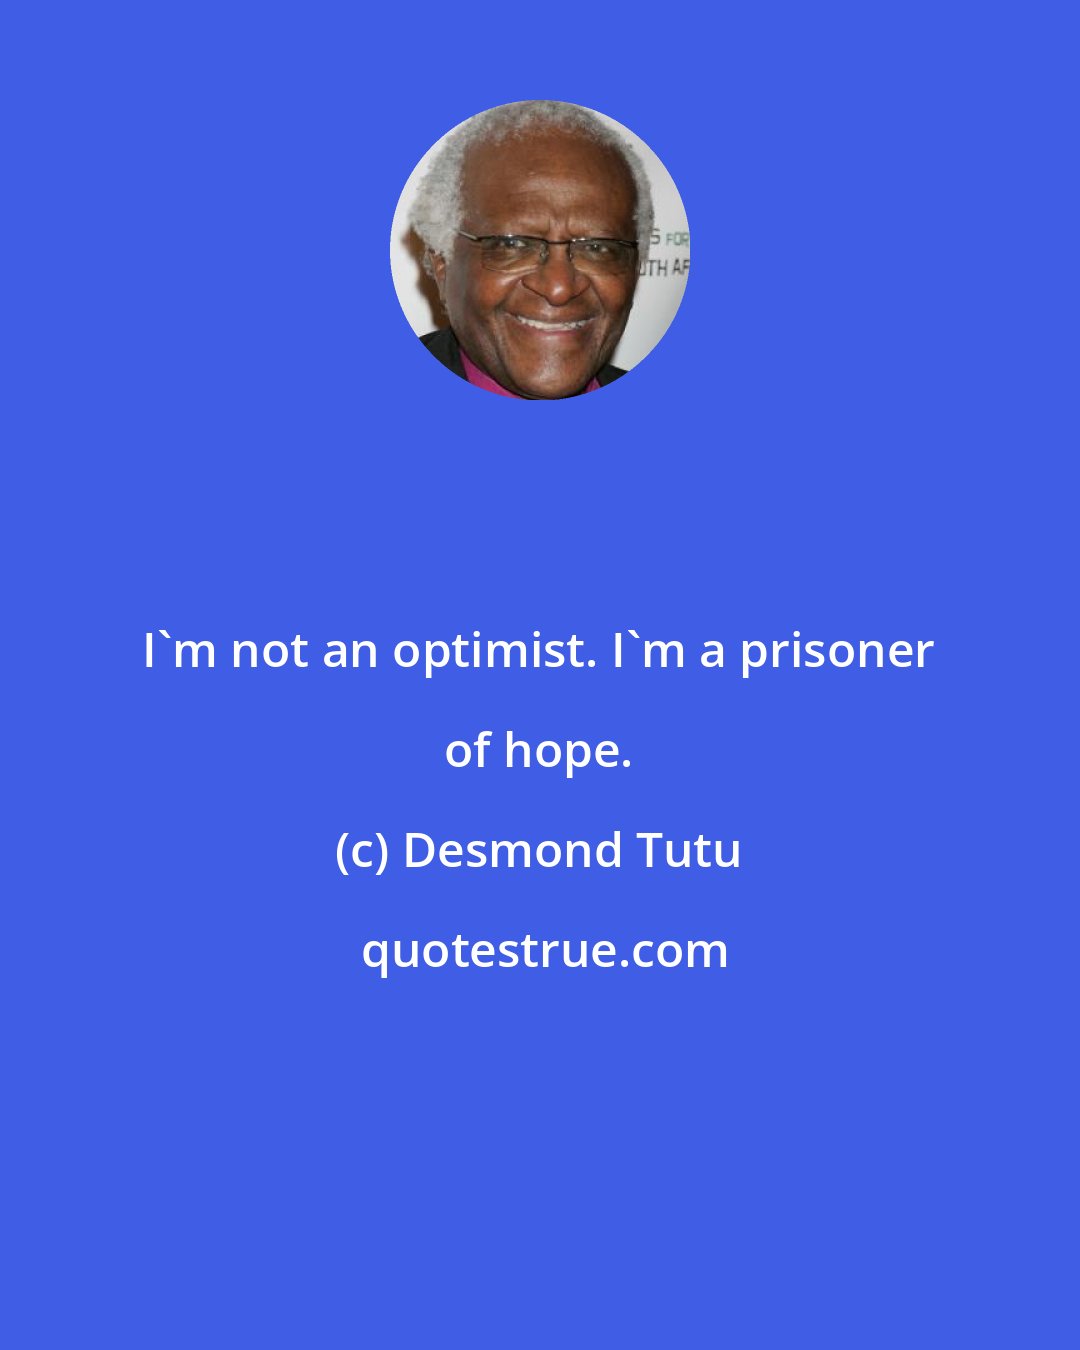 Desmond Tutu: I'm not an optimist. I'm a prisoner of hope.